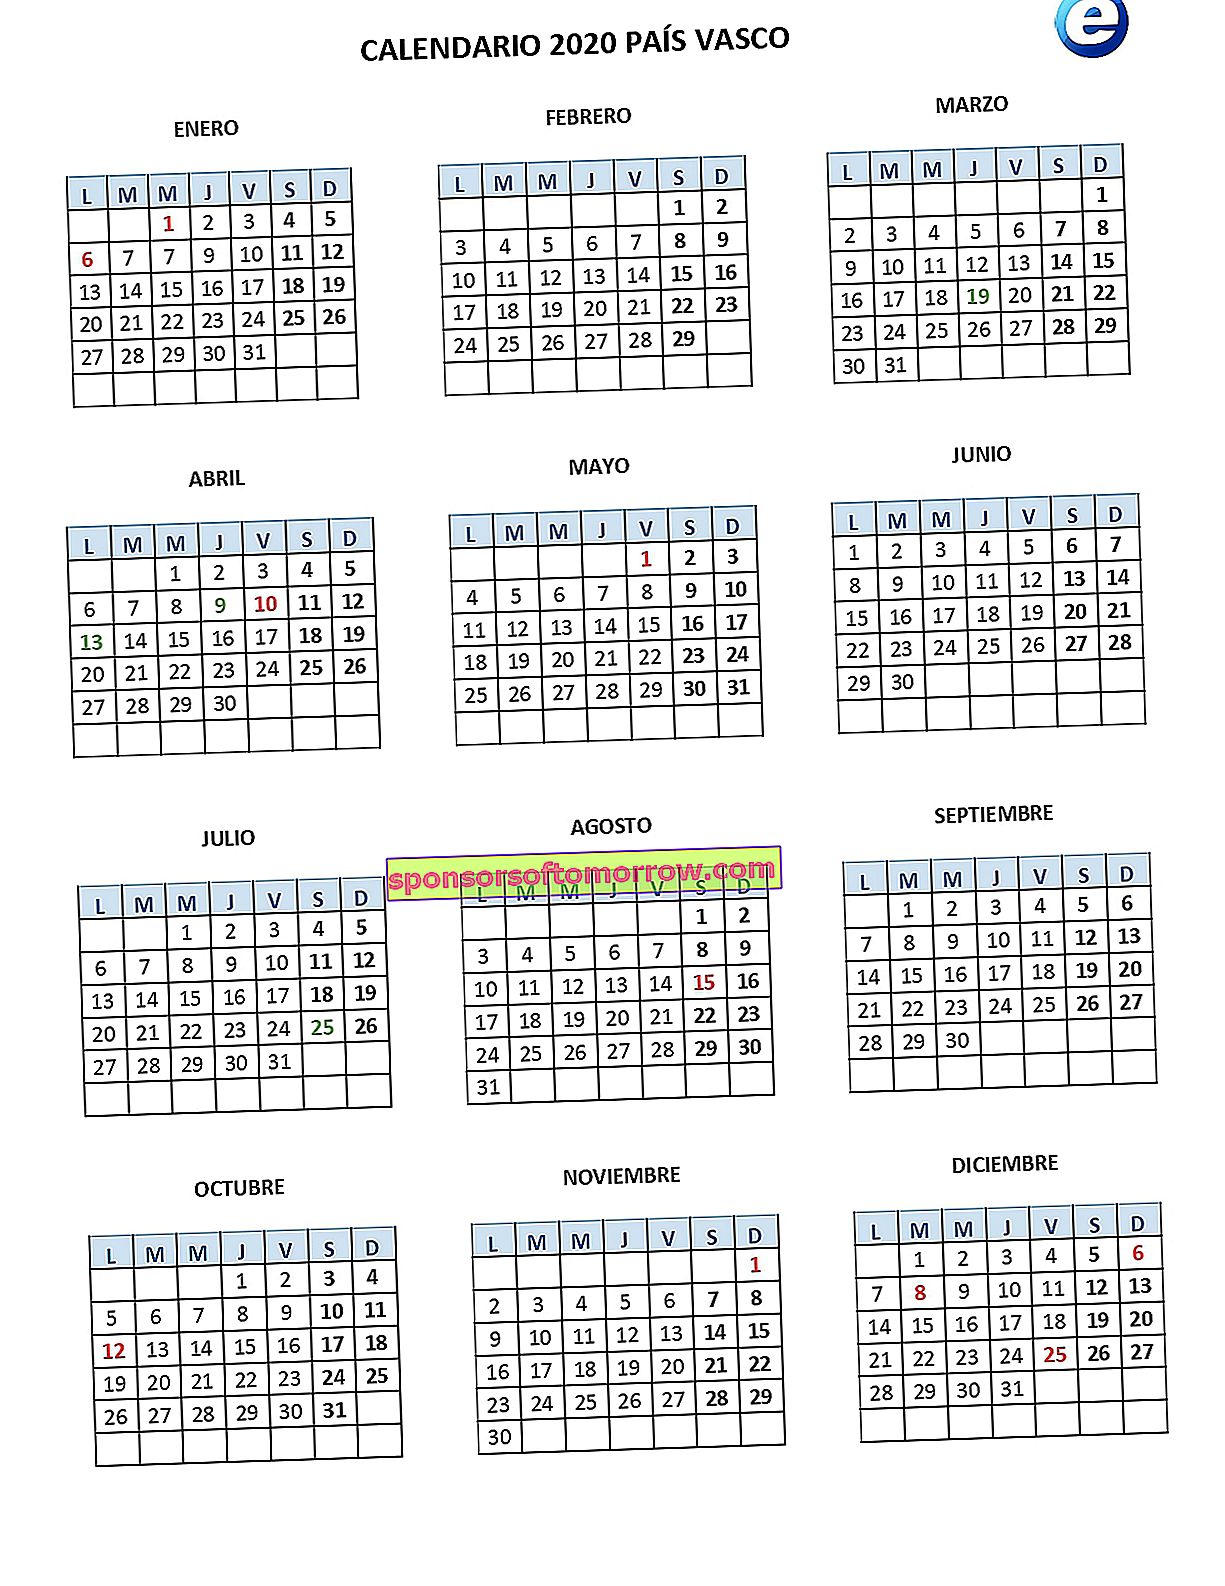 バスク国カレンダー2020_page-0001